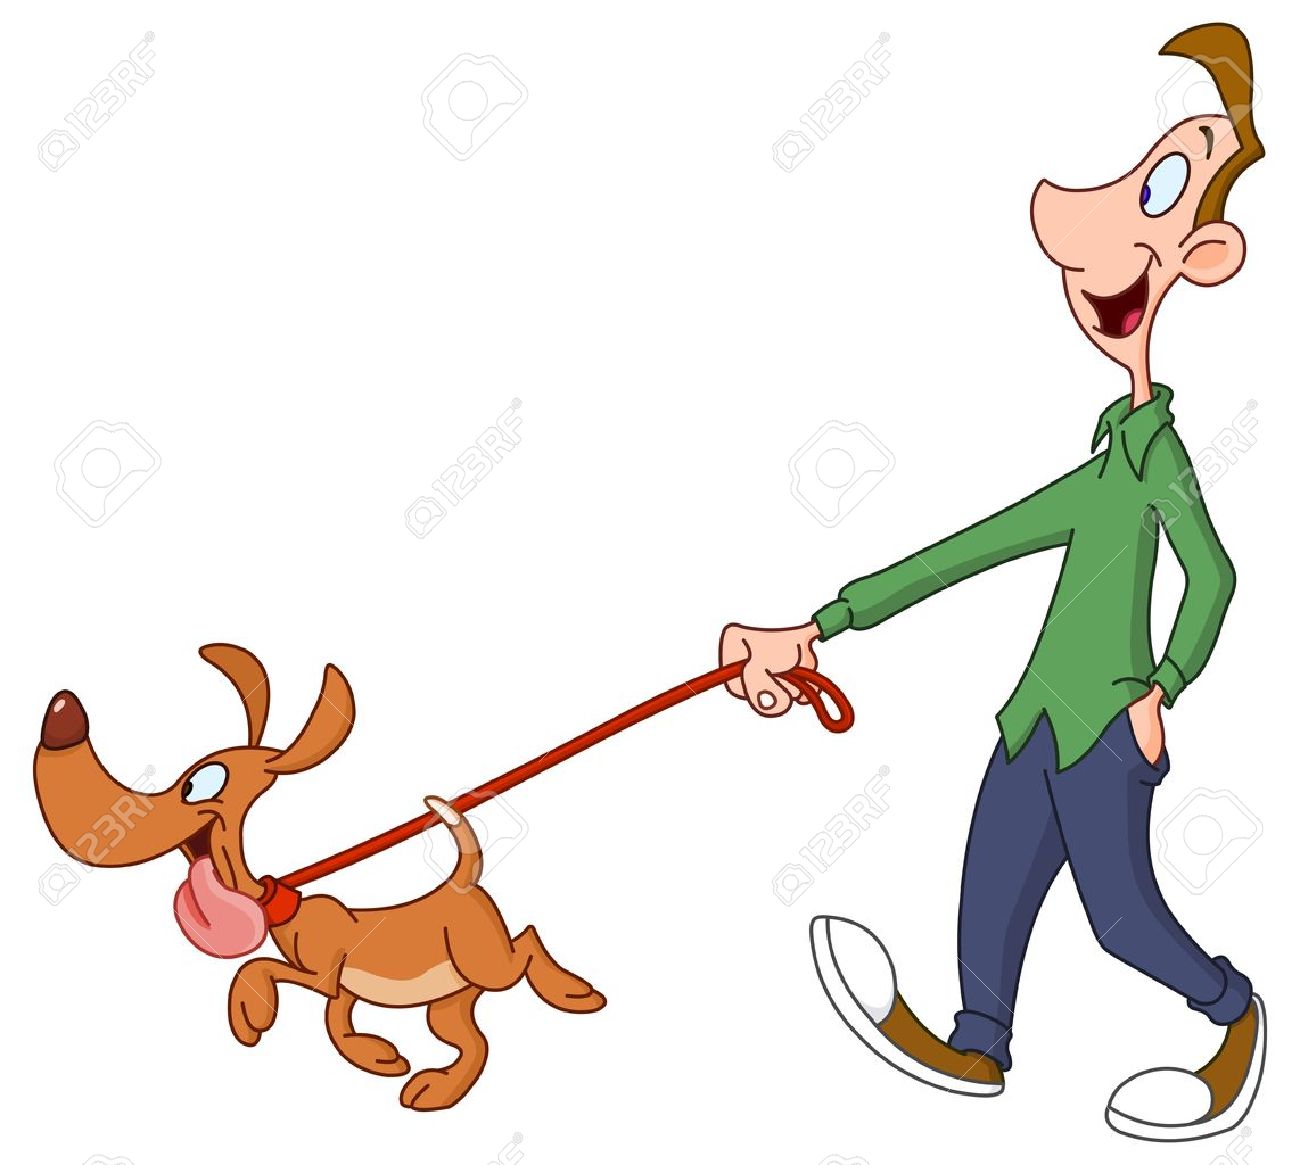 Man walking dog.